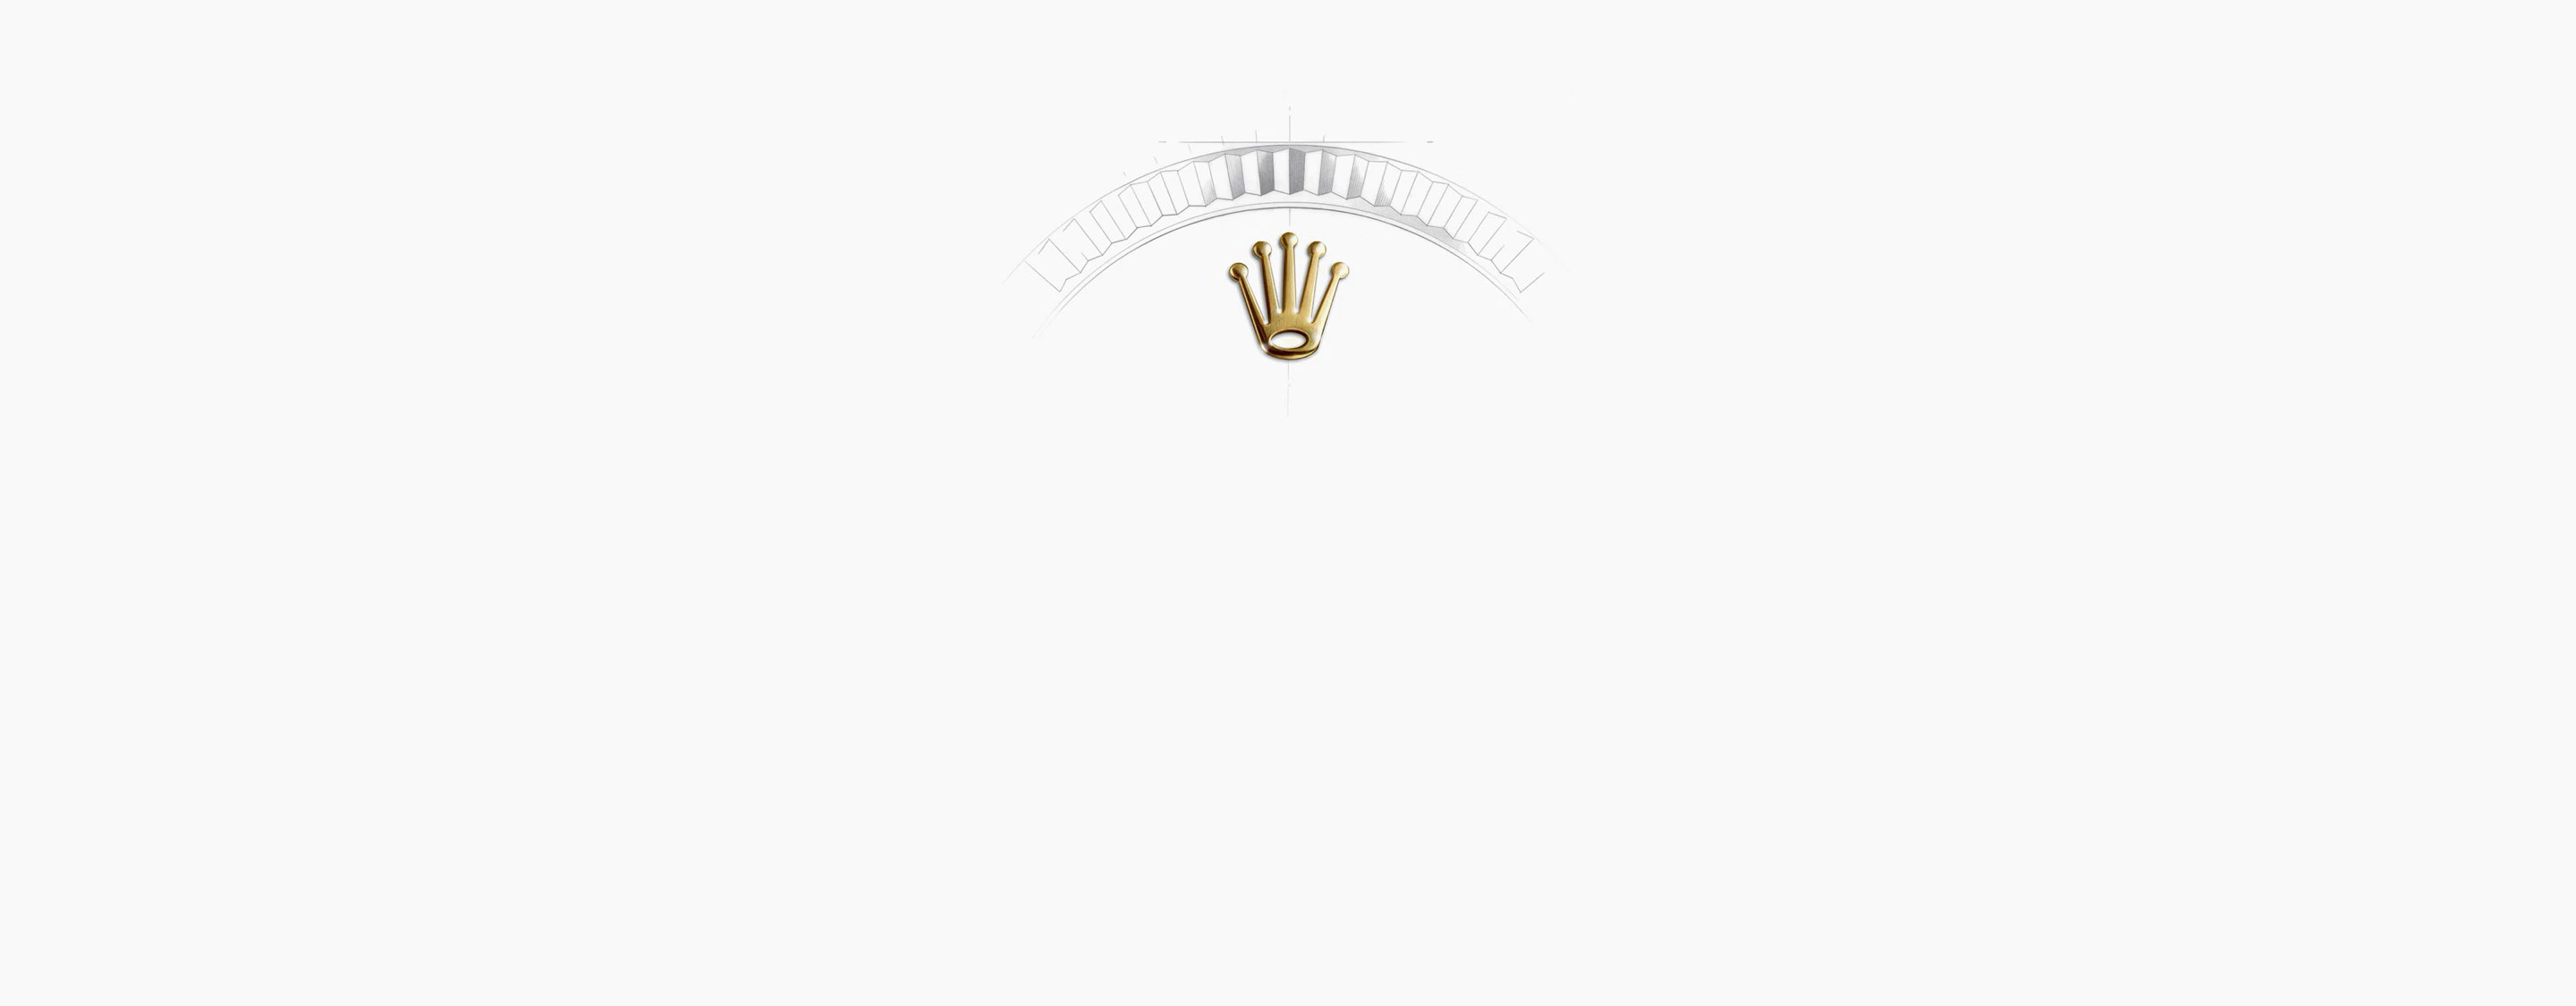 Corona Rolex Datejust 41 en Relojería Alemana